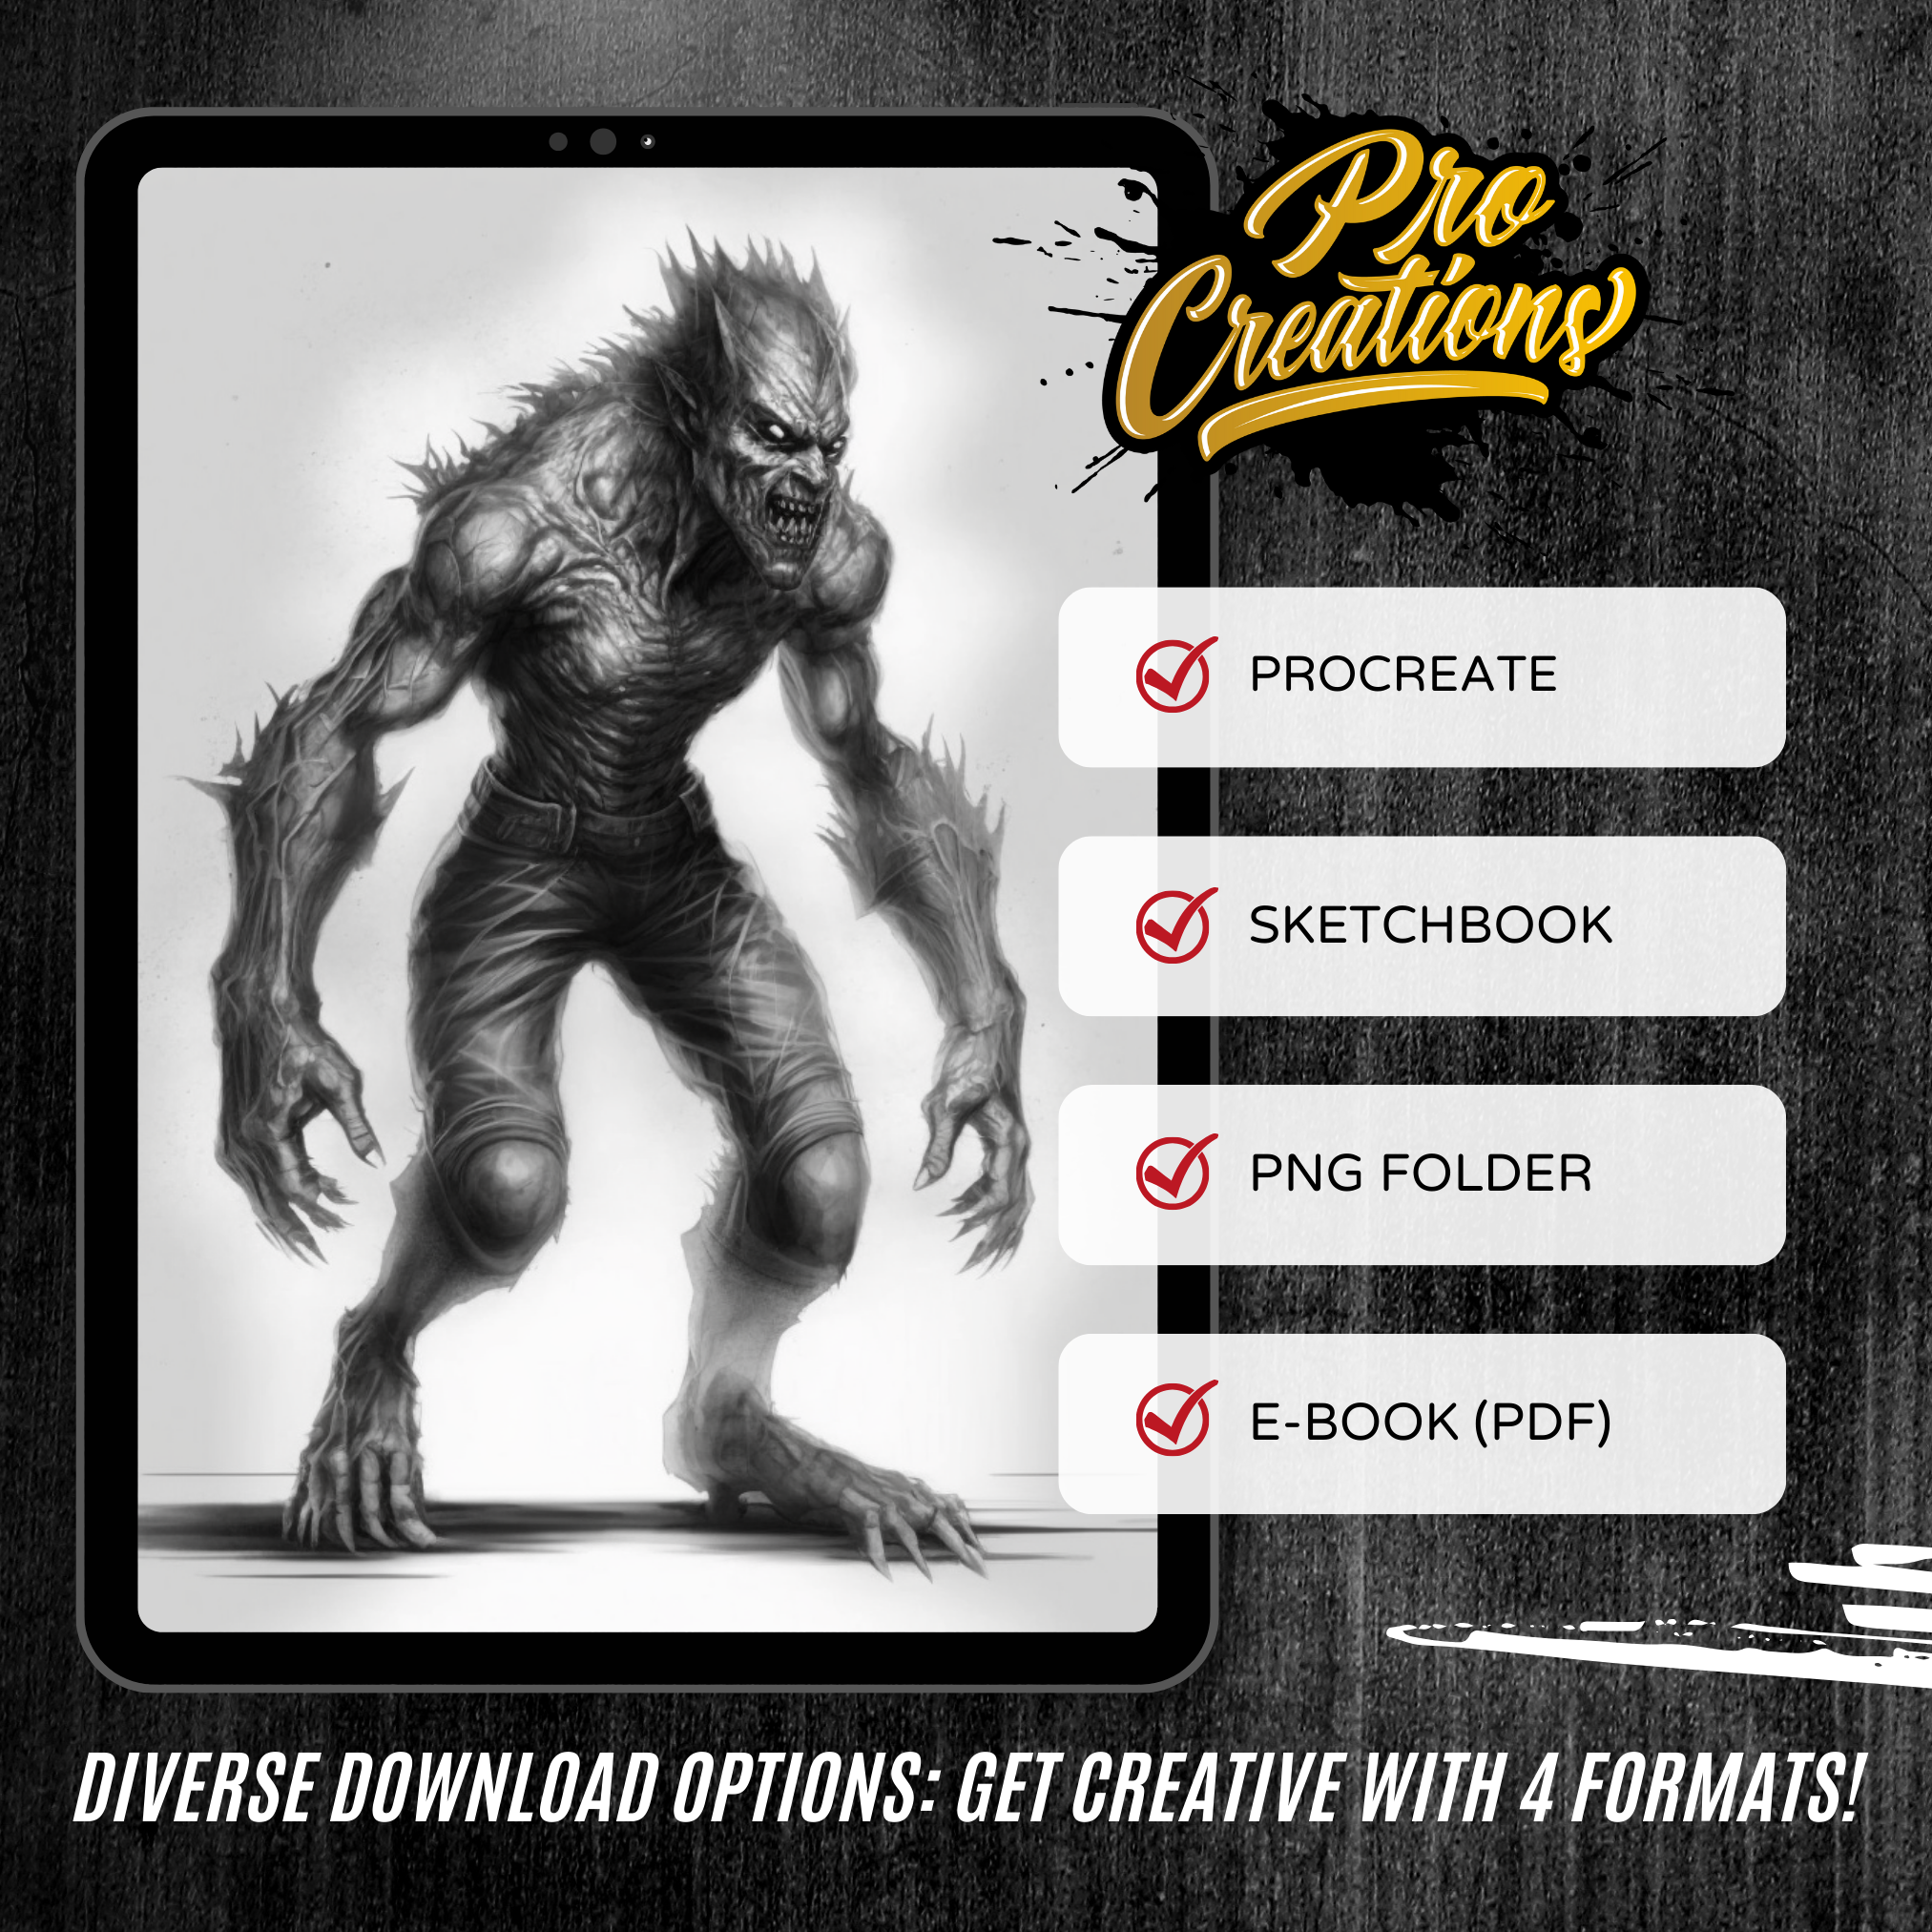 Werewolves Digital Horror Design Collection: 50 Procreate & Sketchbook Images"